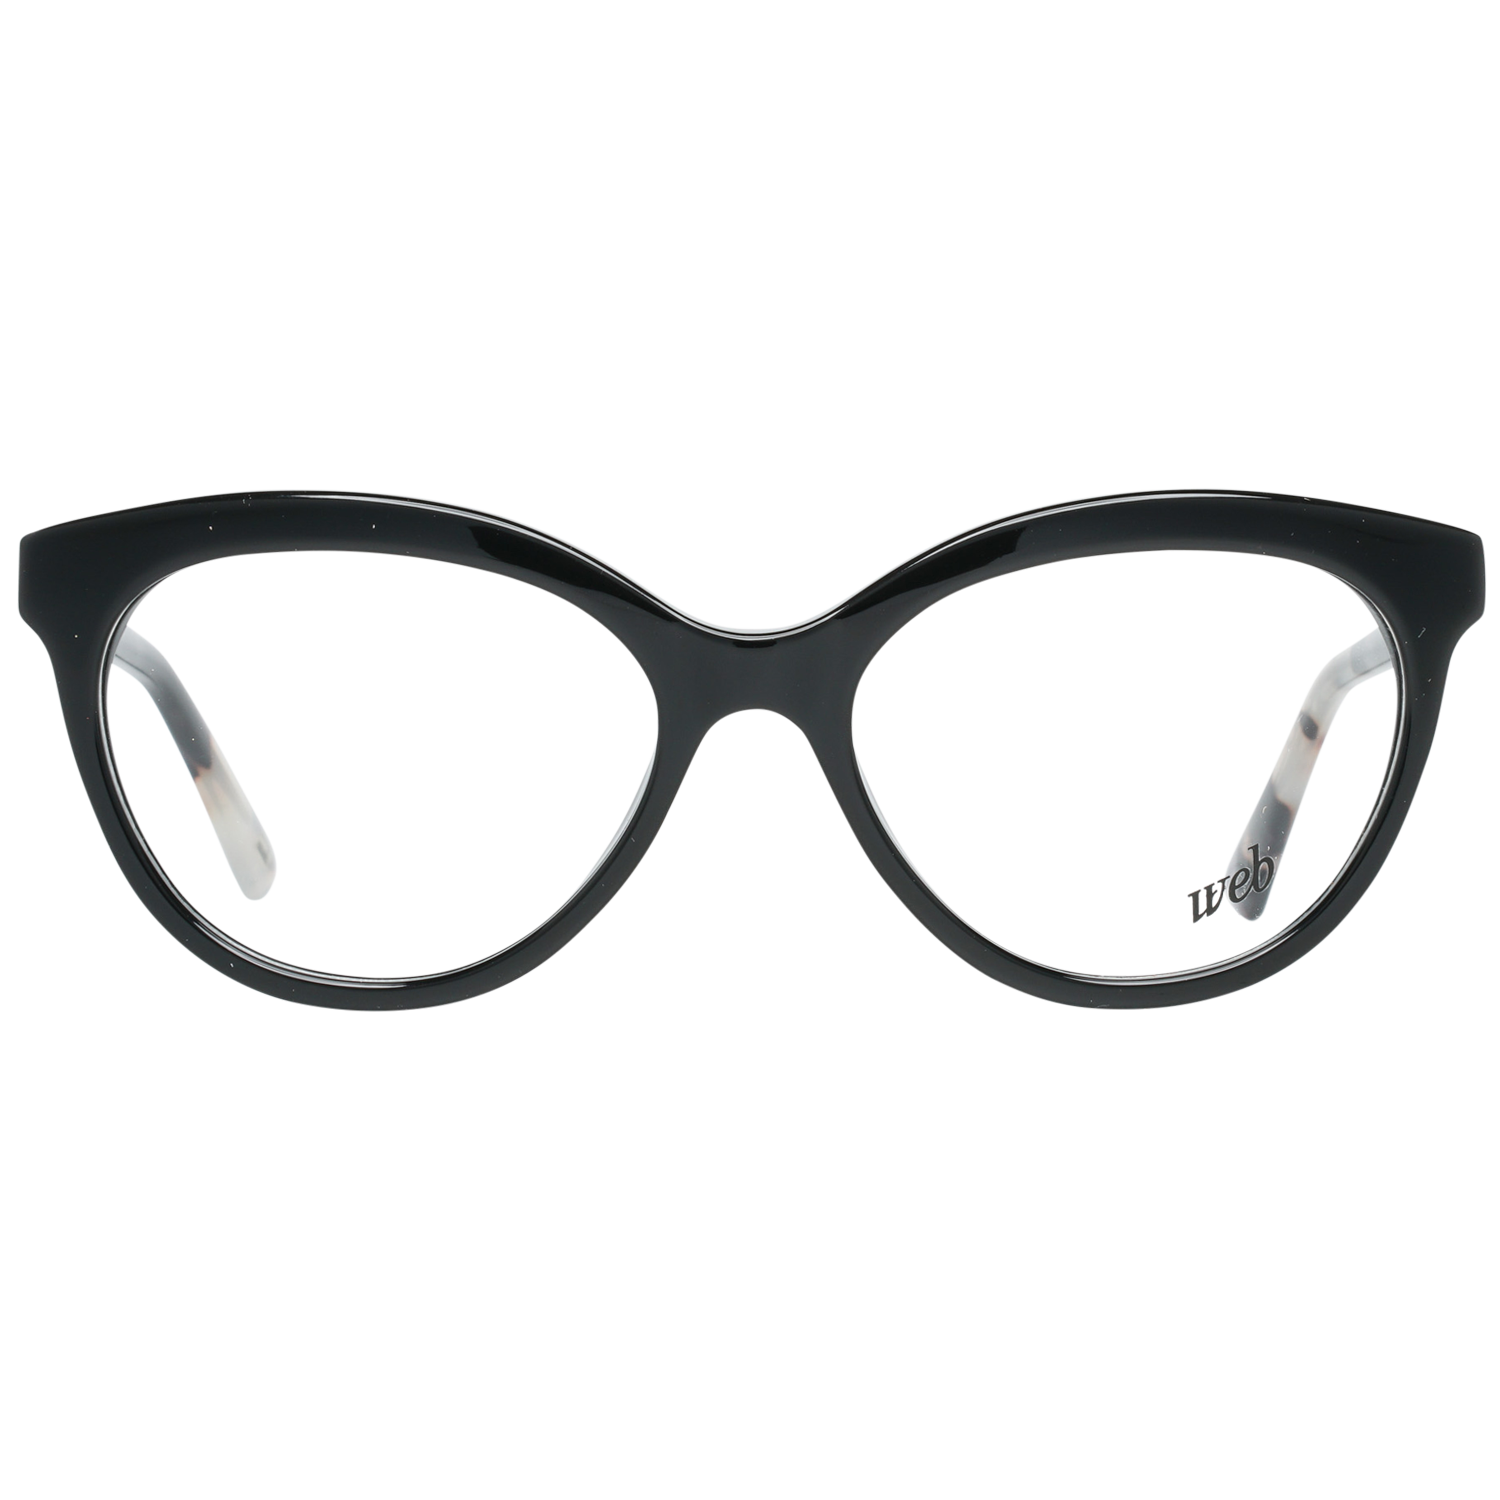 Web Frames Web Prescription Glasses Optical Frame WE5250 A01 51 Eyeglasses Eyewear UK USA Australia 